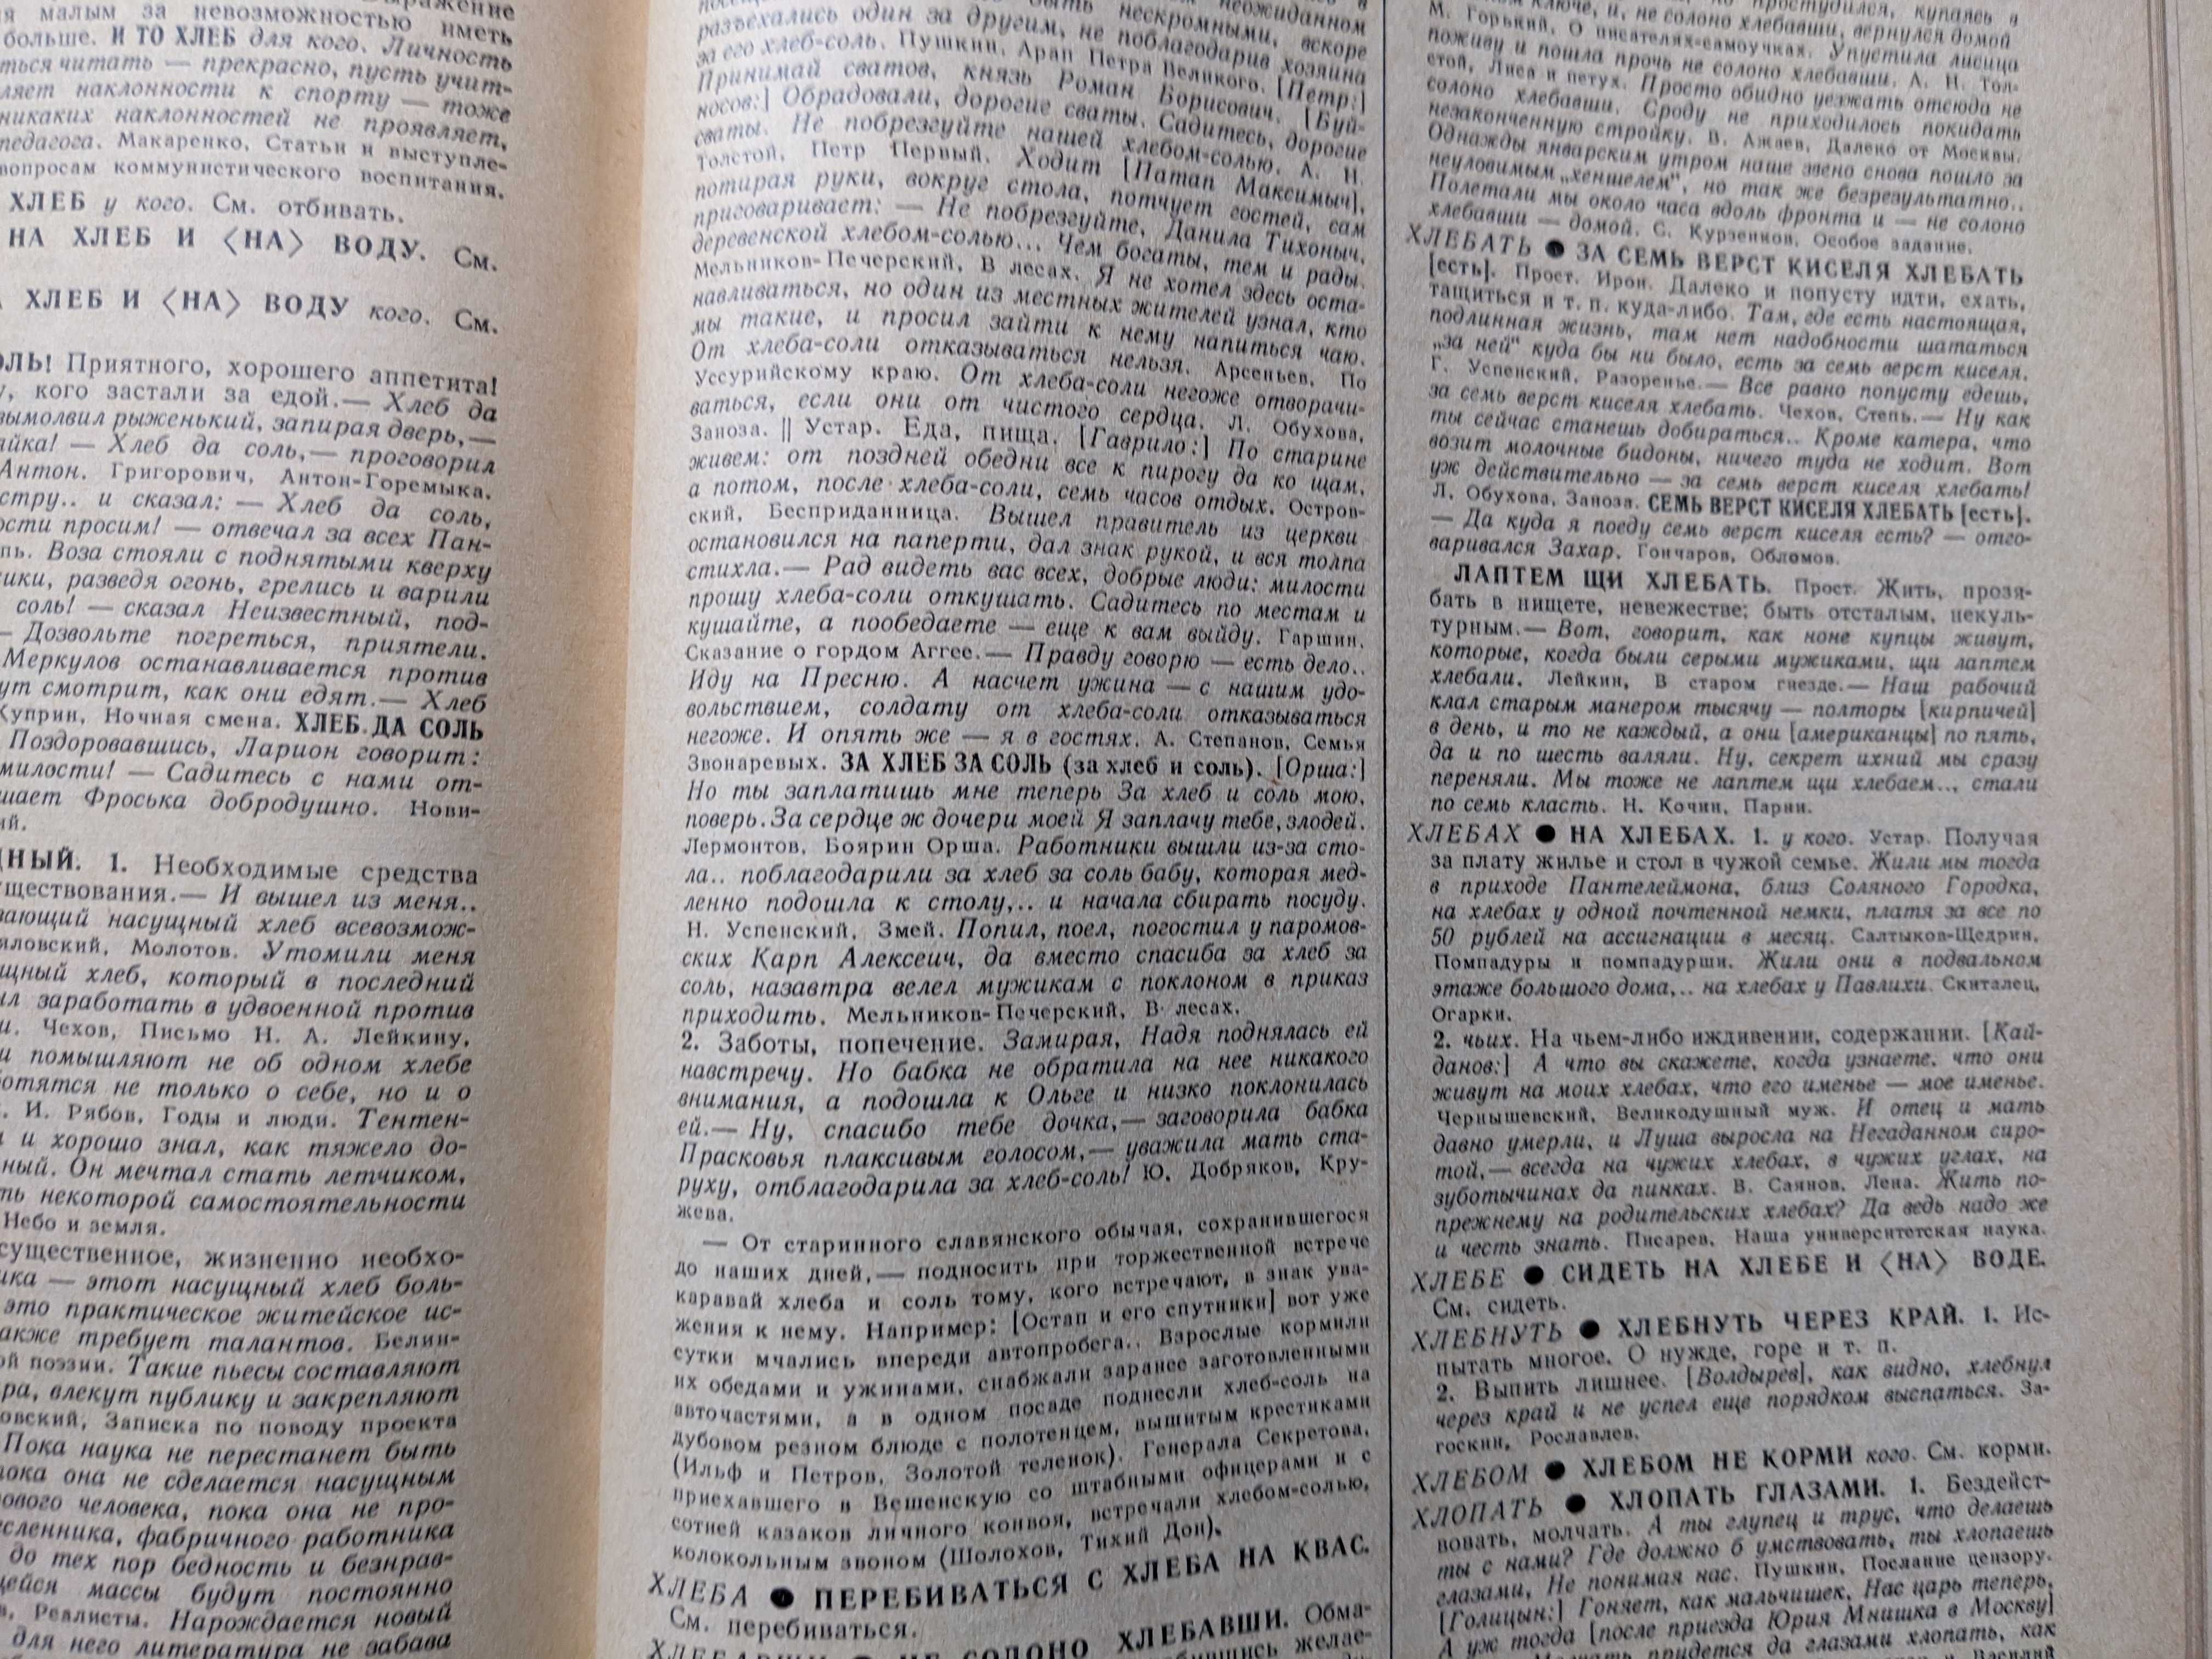 Фразеологический словарь русского языка 1968 год